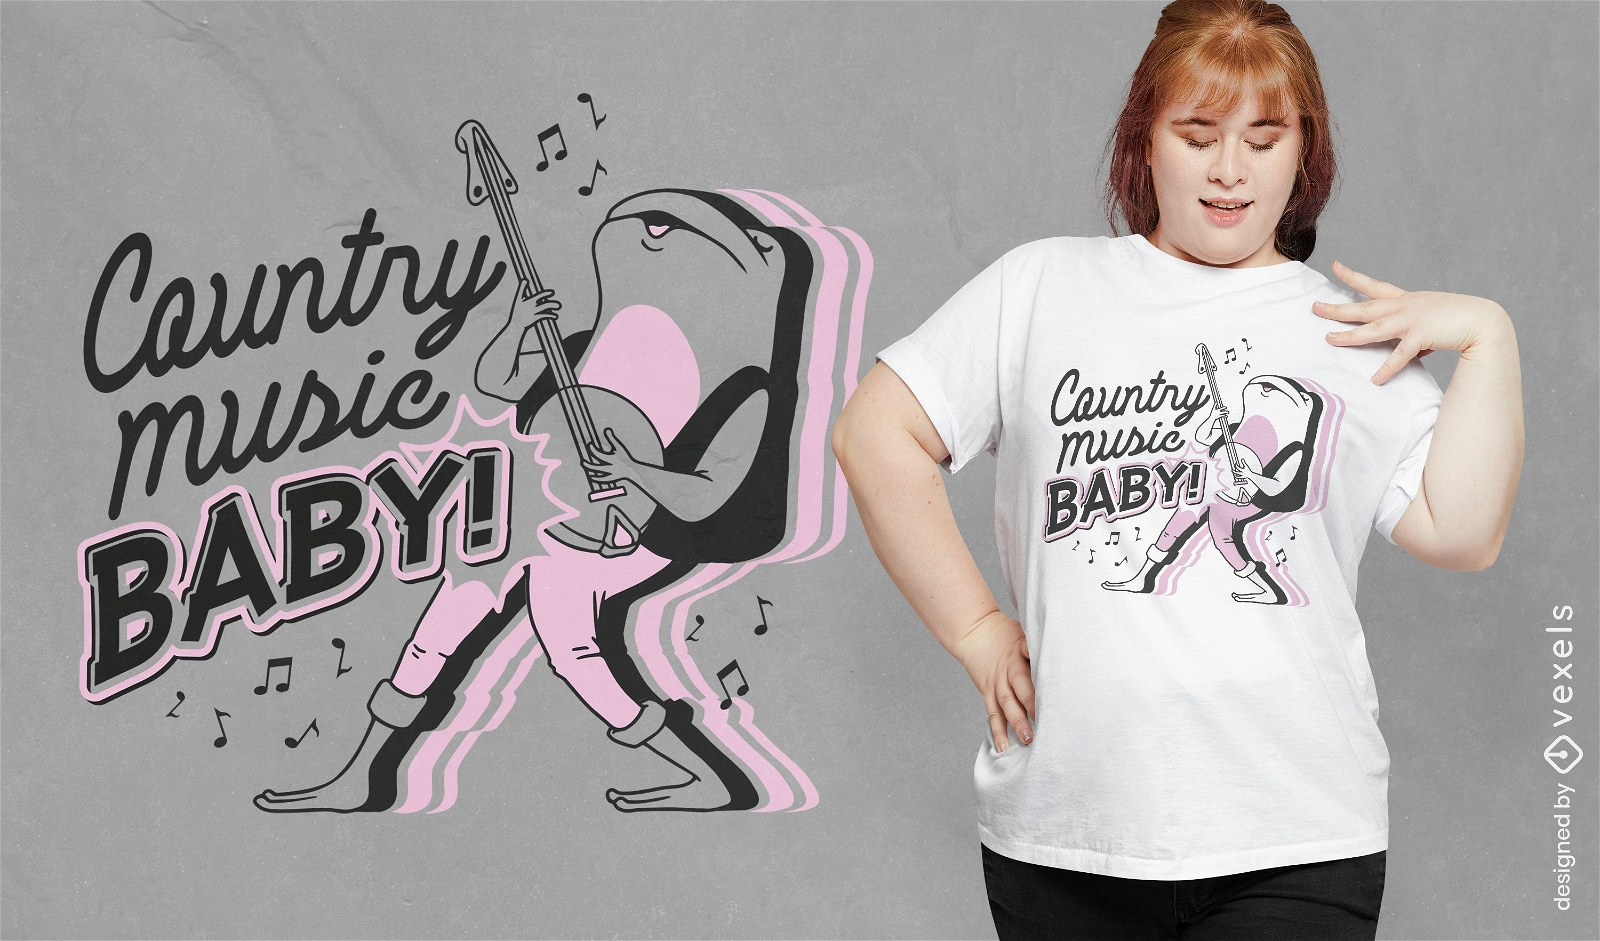 M?sica country beb?! design de camiseta de desenho animado de sapo